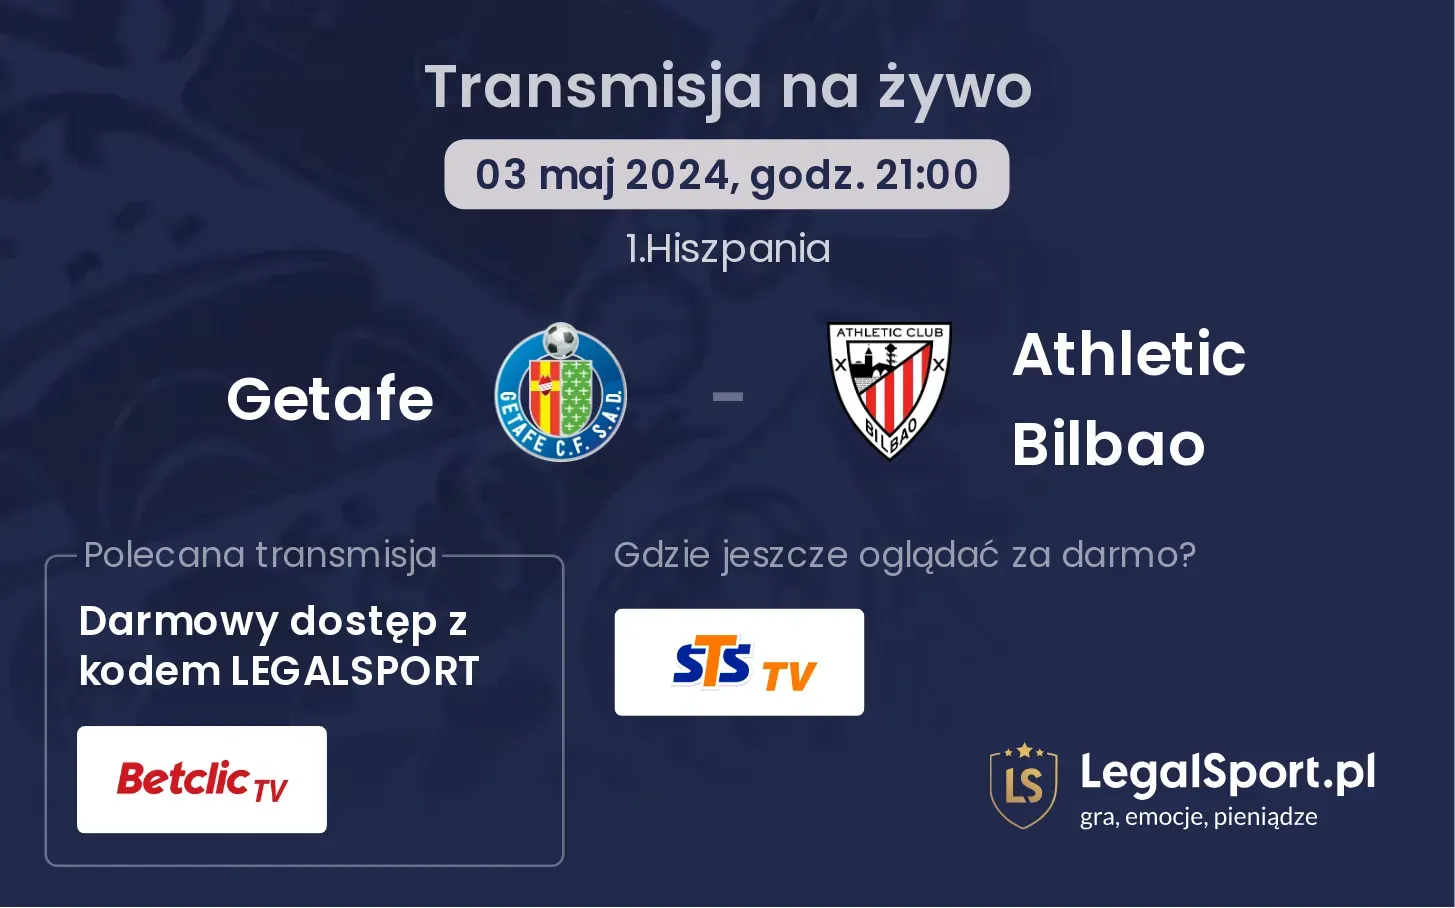 Getafe - Athletic Bilbao transmisja na żywo